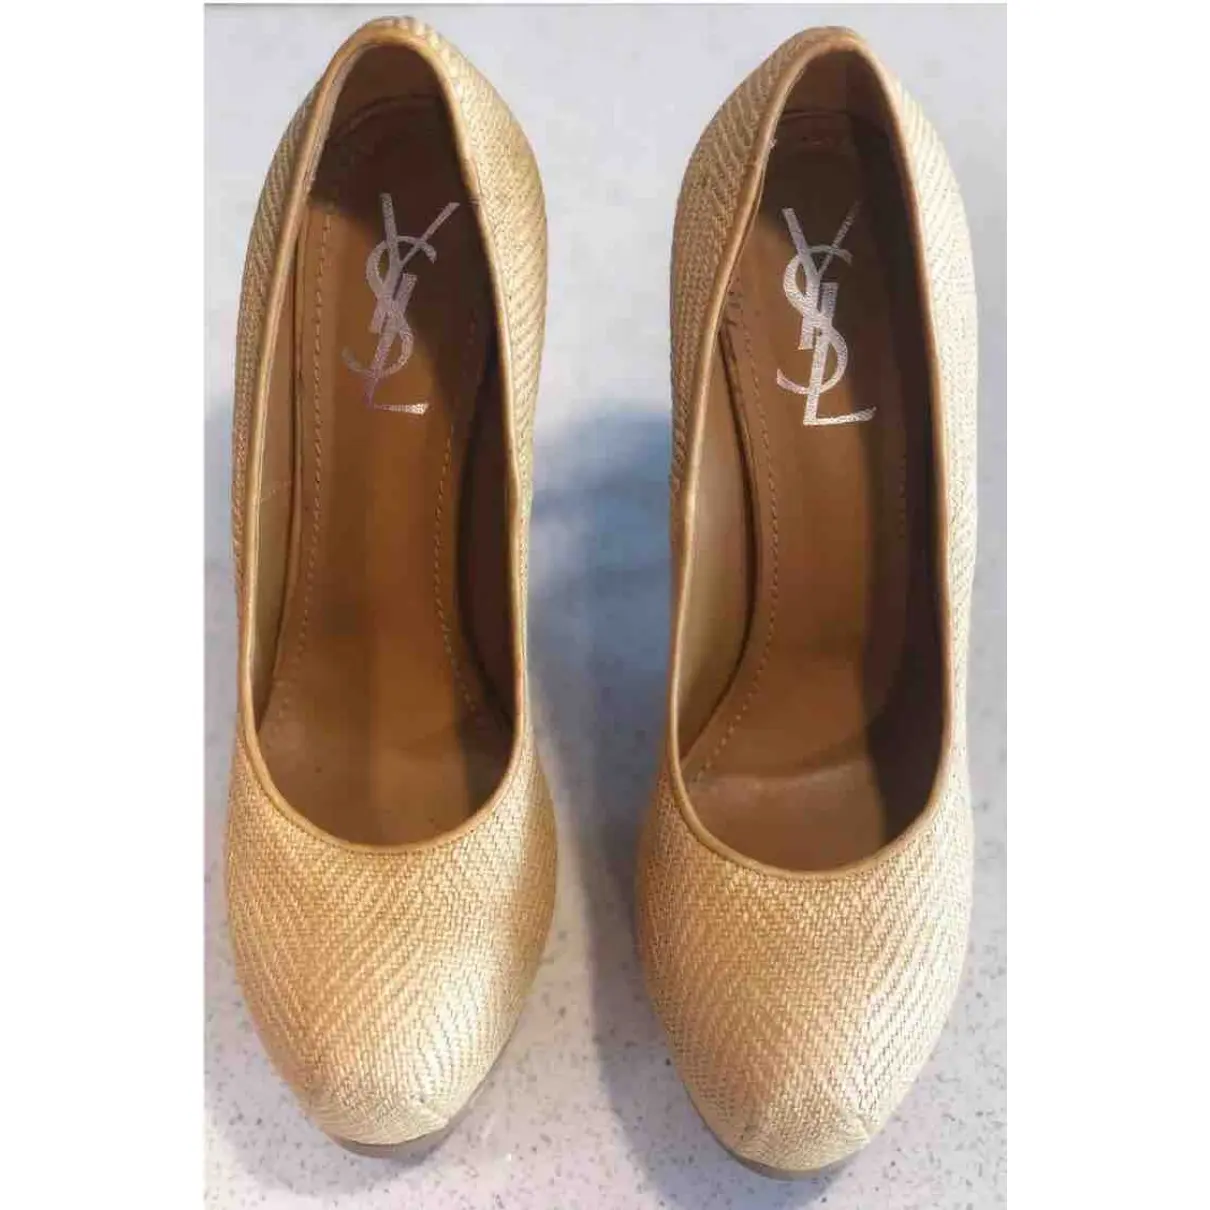 Buy Yves Saint Laurent Trib Too cloth heels online - Vintage